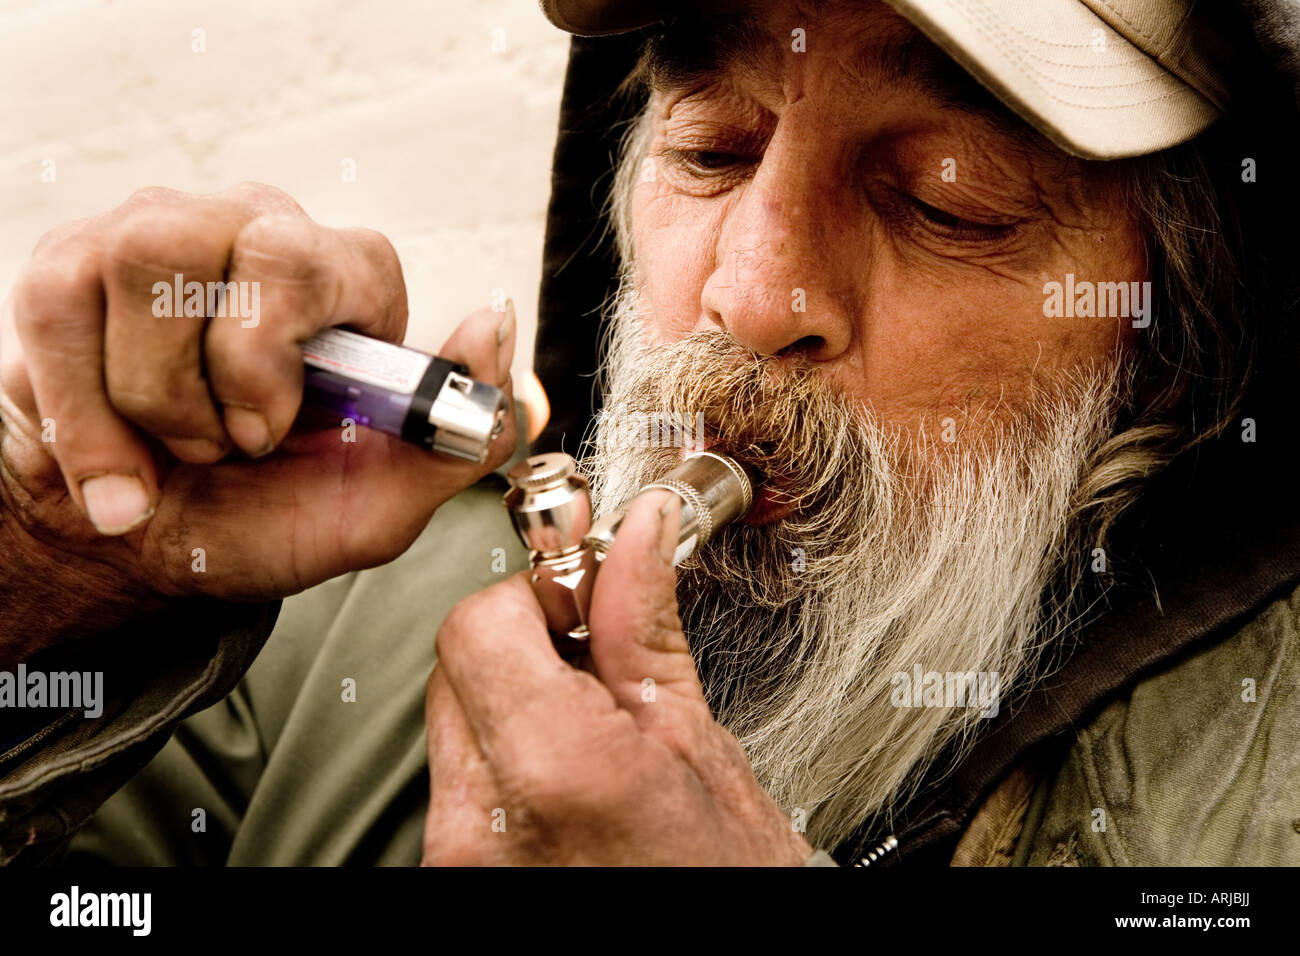 Man smoking marijuana with a pipe Stock Photo